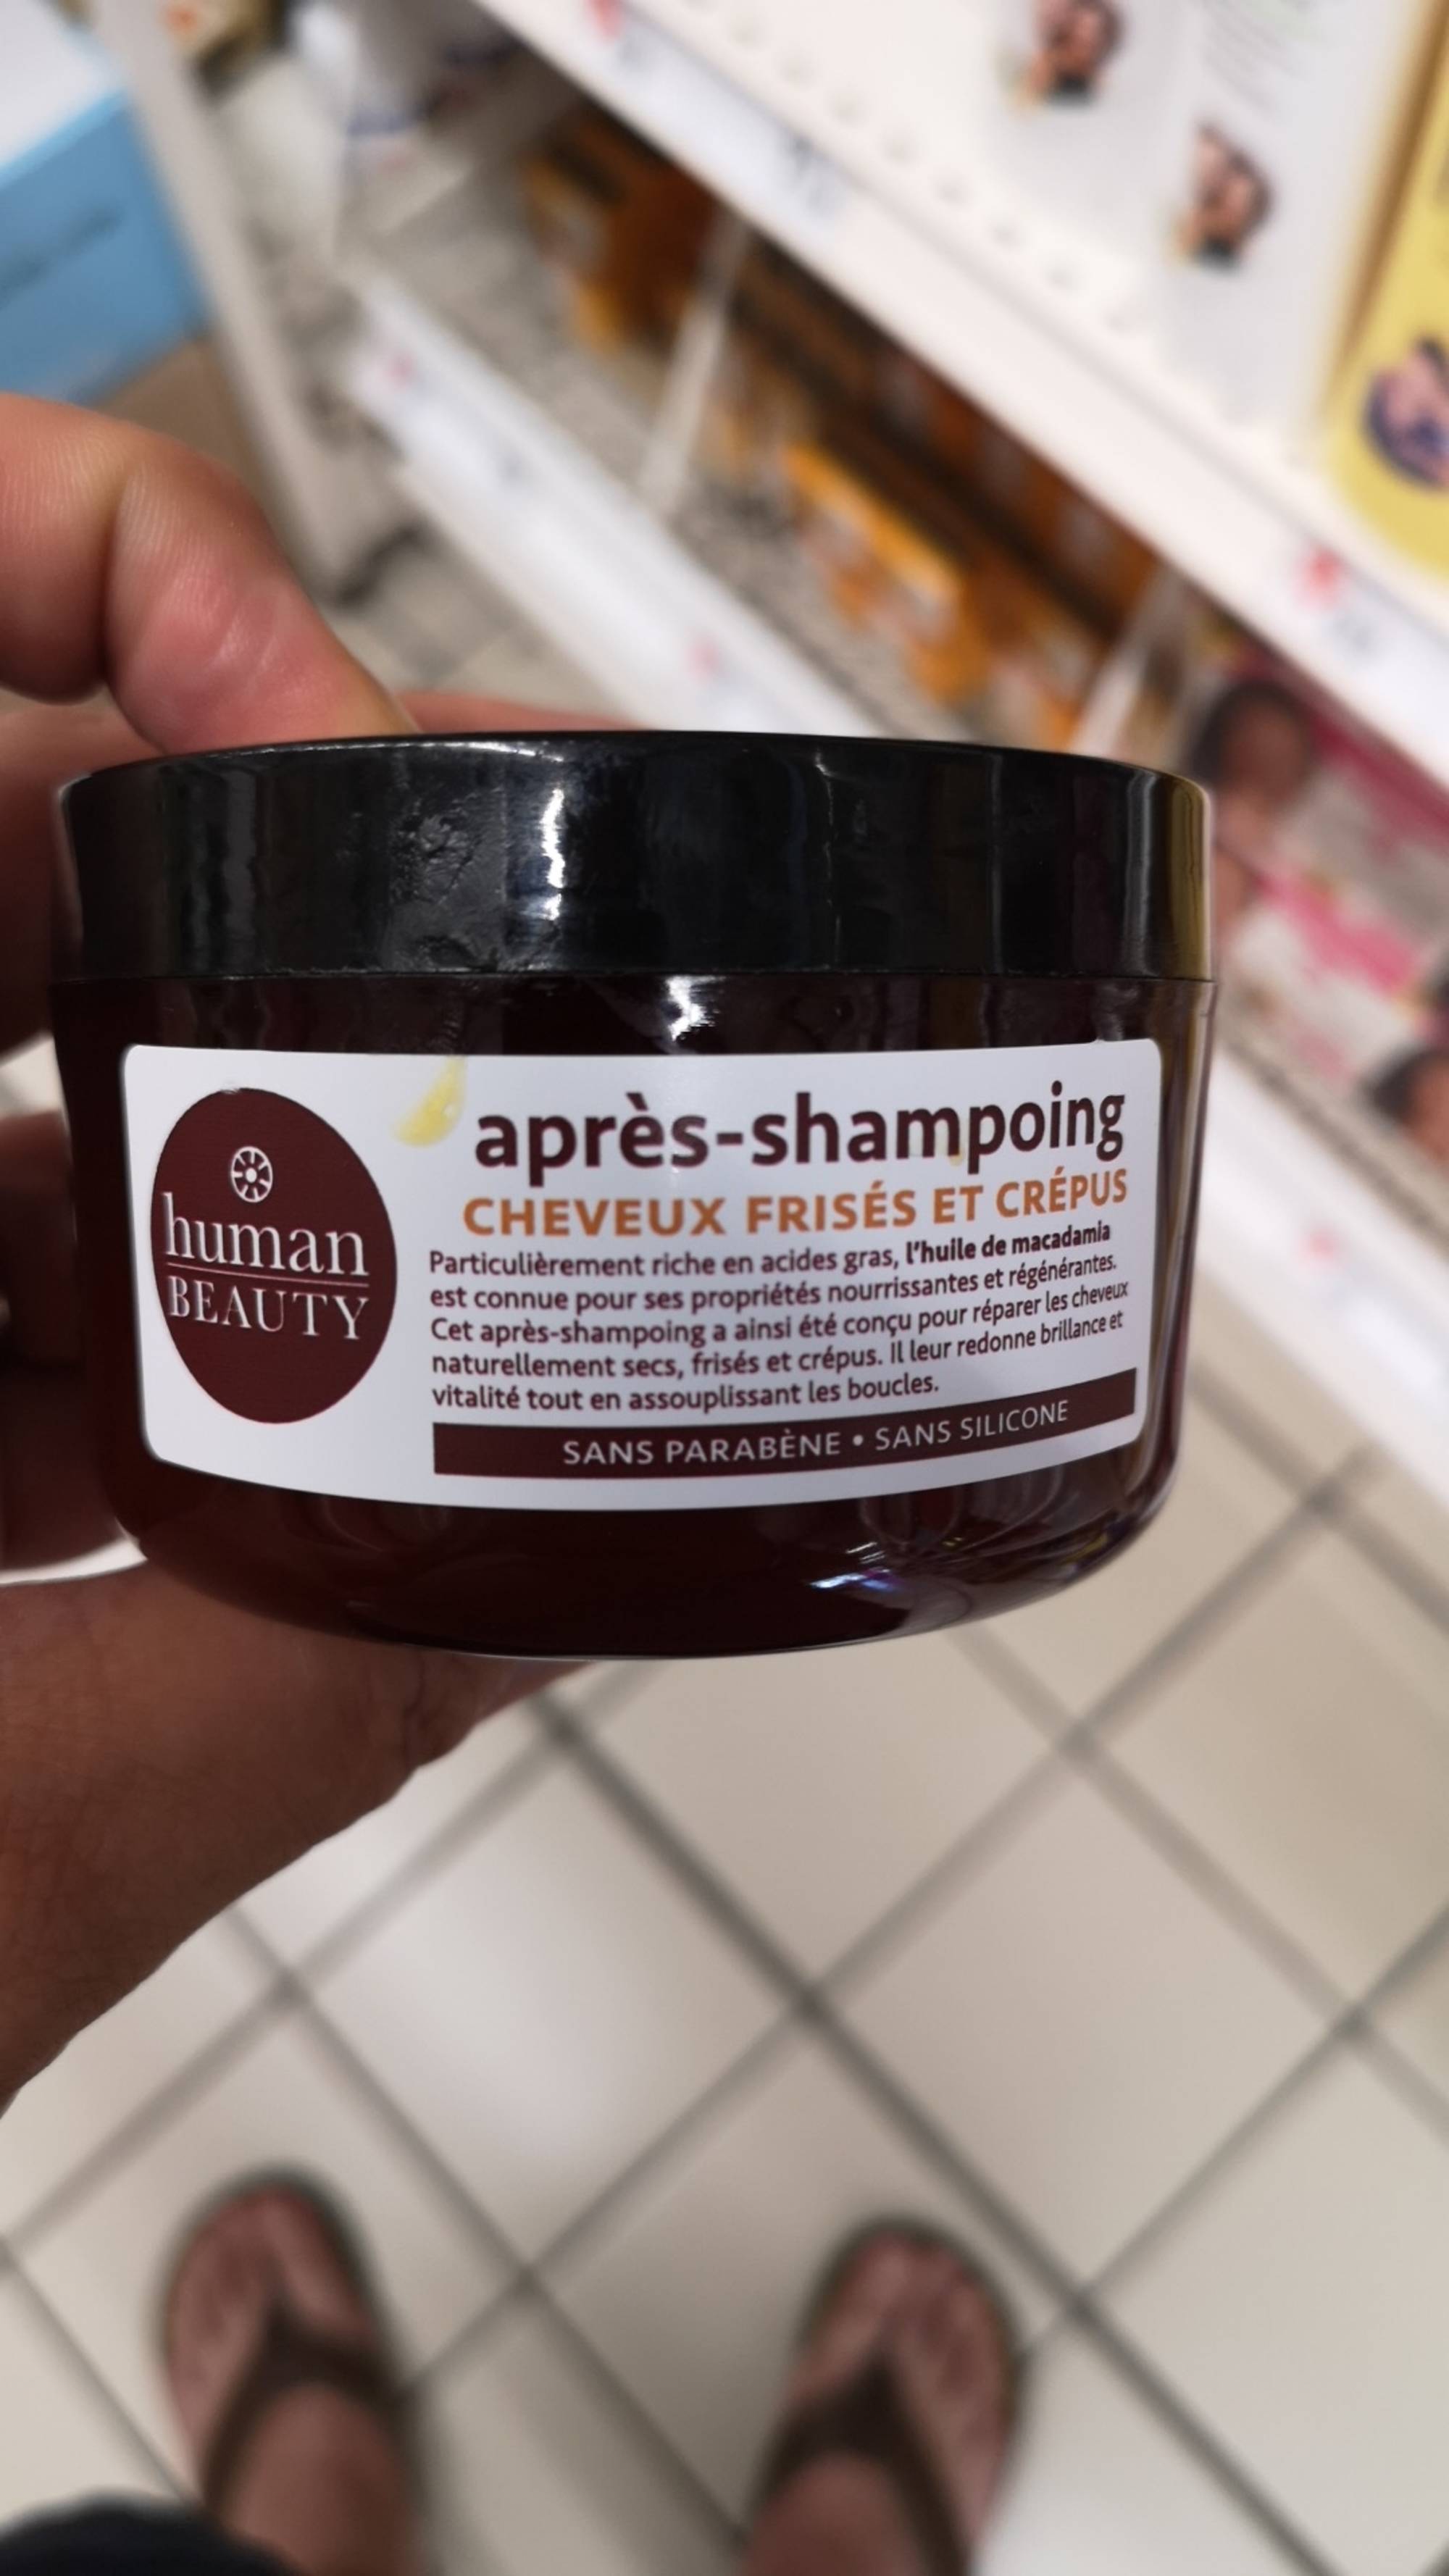 HUMAN BEAUTY - Après-shampooing cheveux frisés et crépus